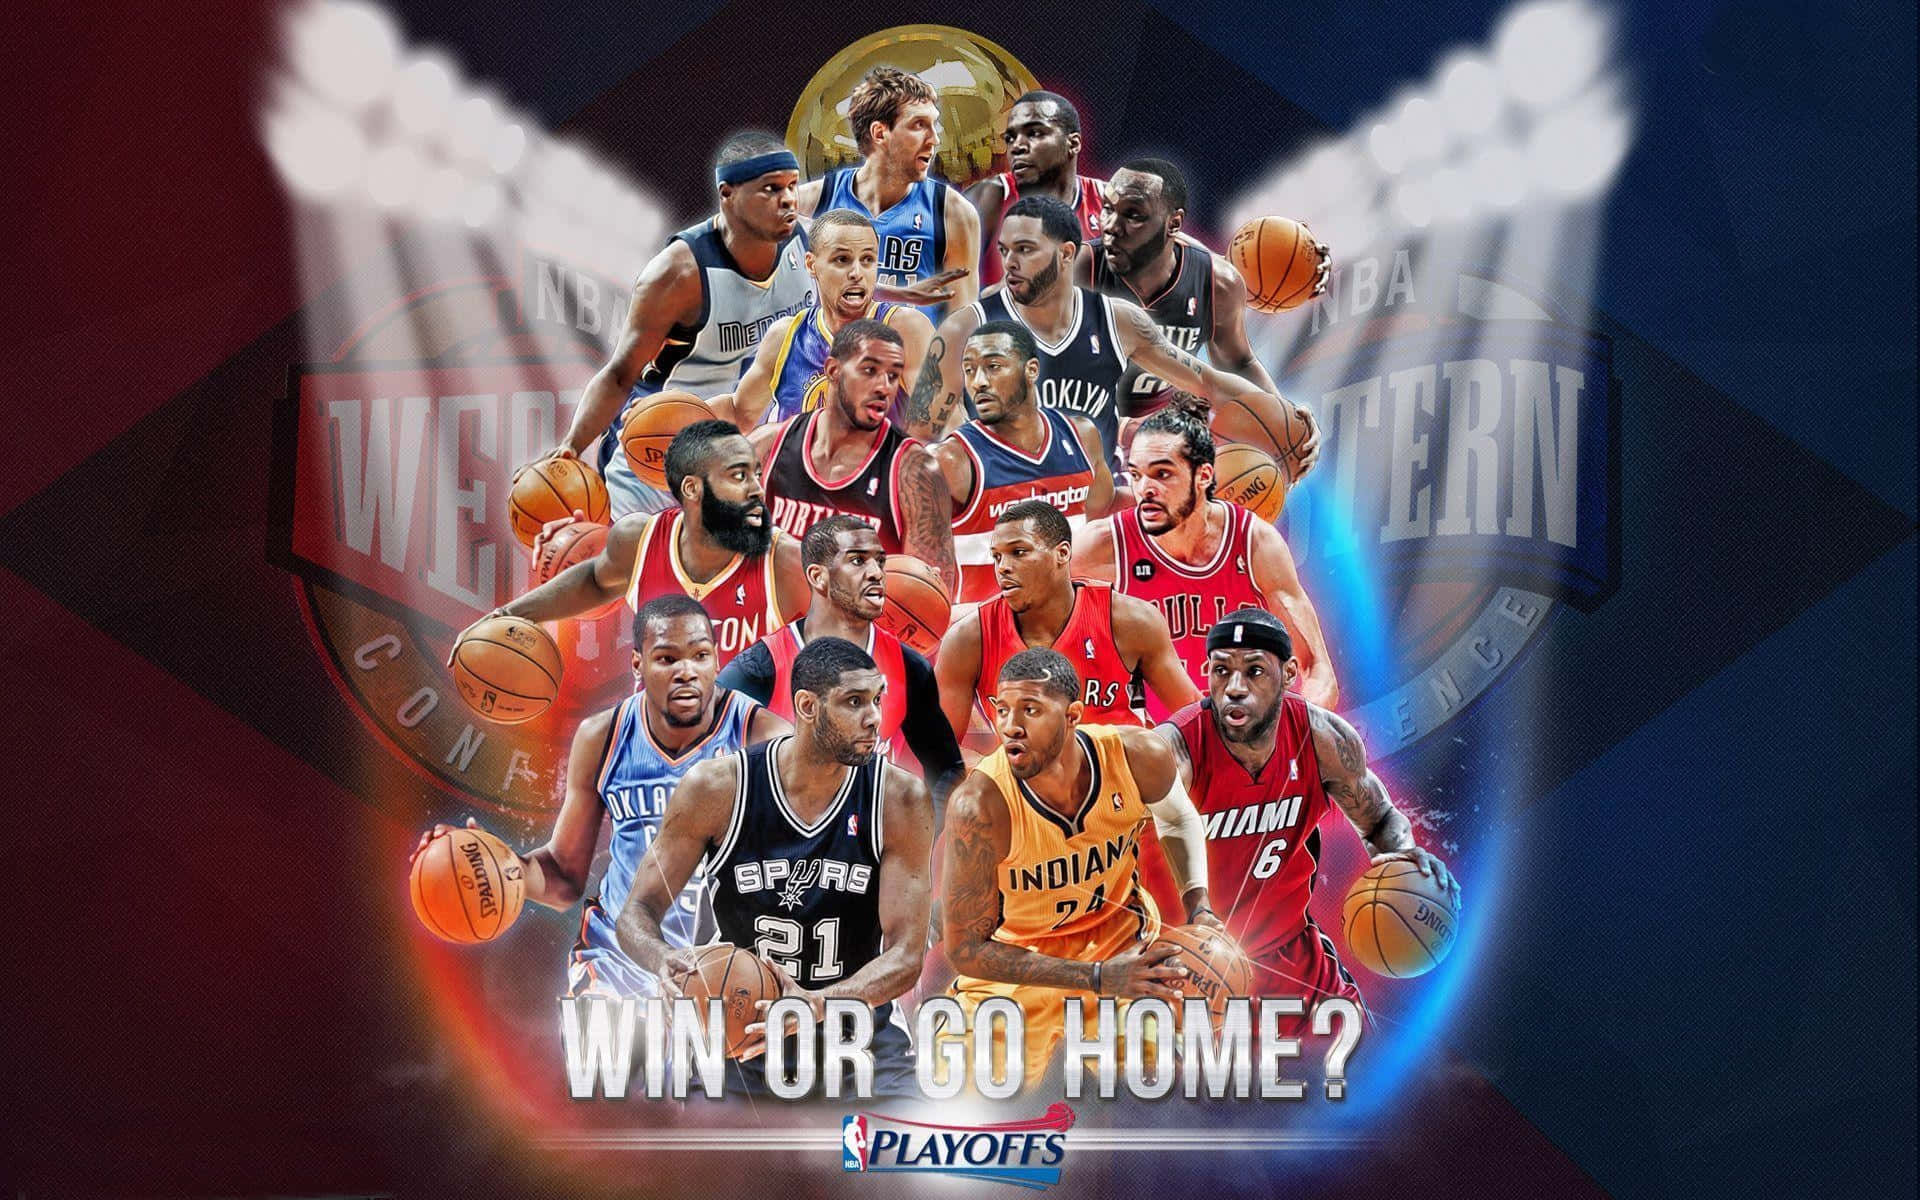 En gruppe af succesrige NBA-spillere, der repræsenterer hele ligaen. Wallpaper